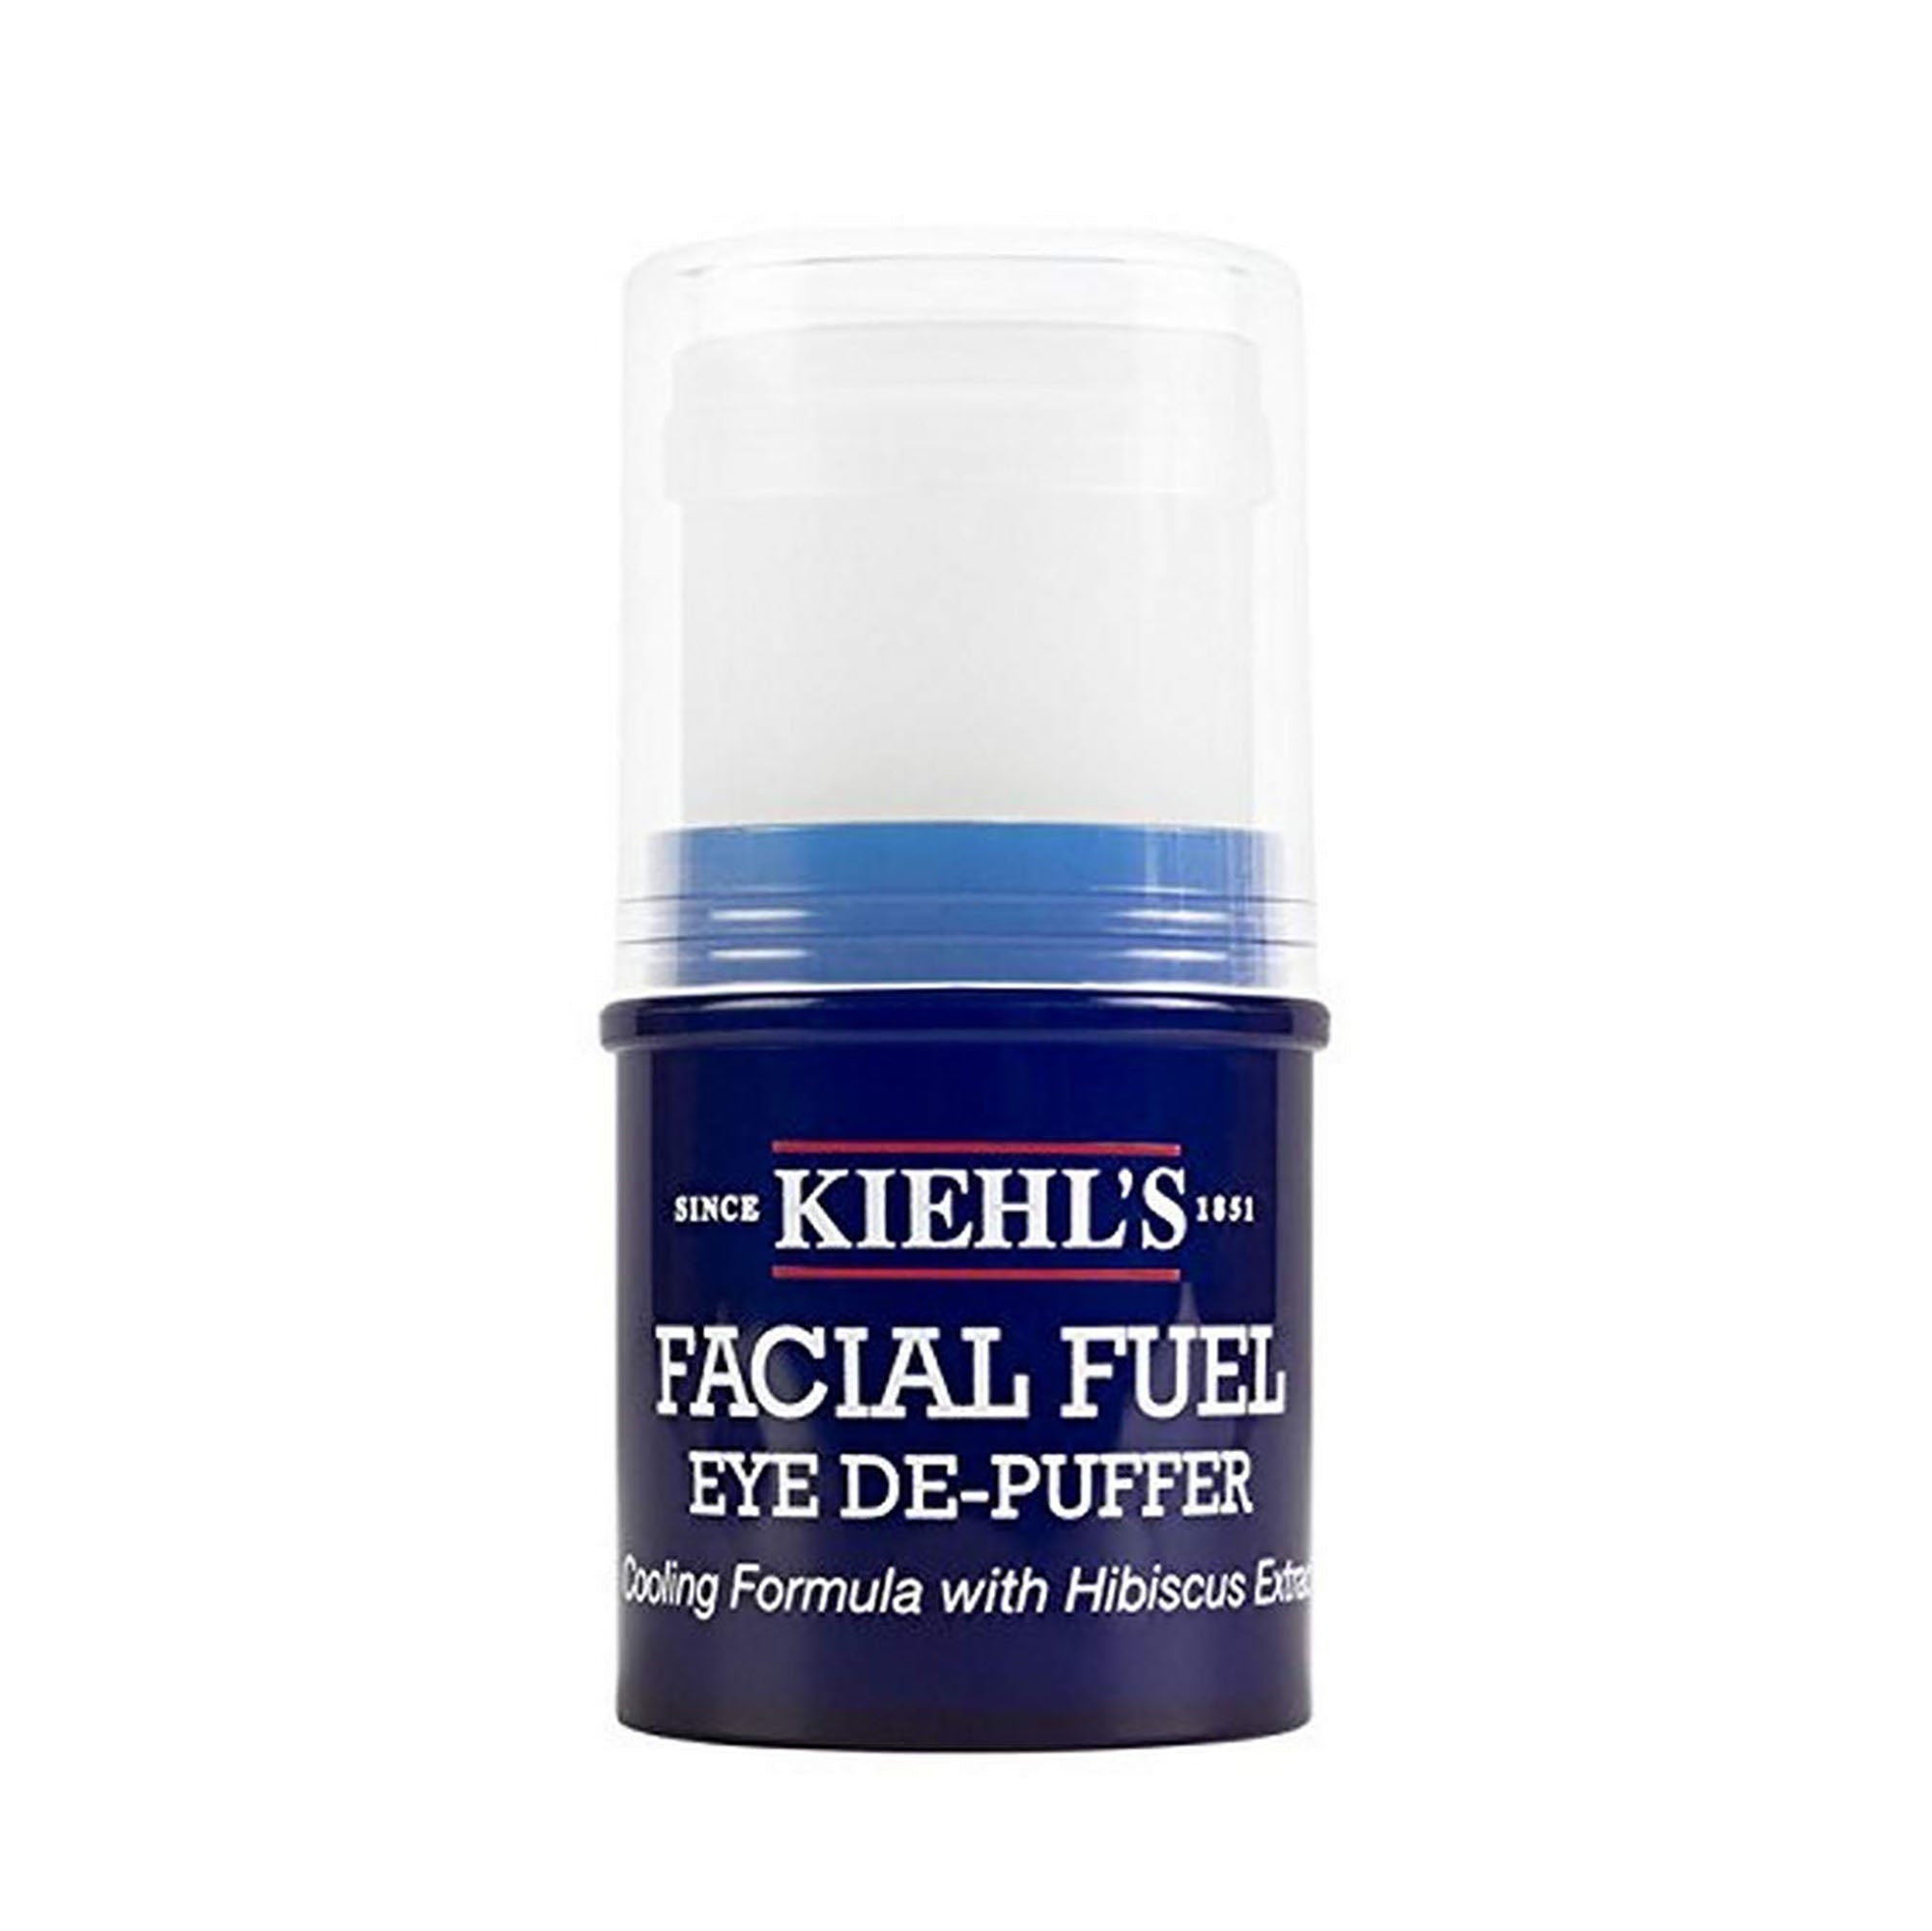 Kiehl's Facial Fuel Men's Eye De-Puffer with Hibiscus Extract / .17OZ